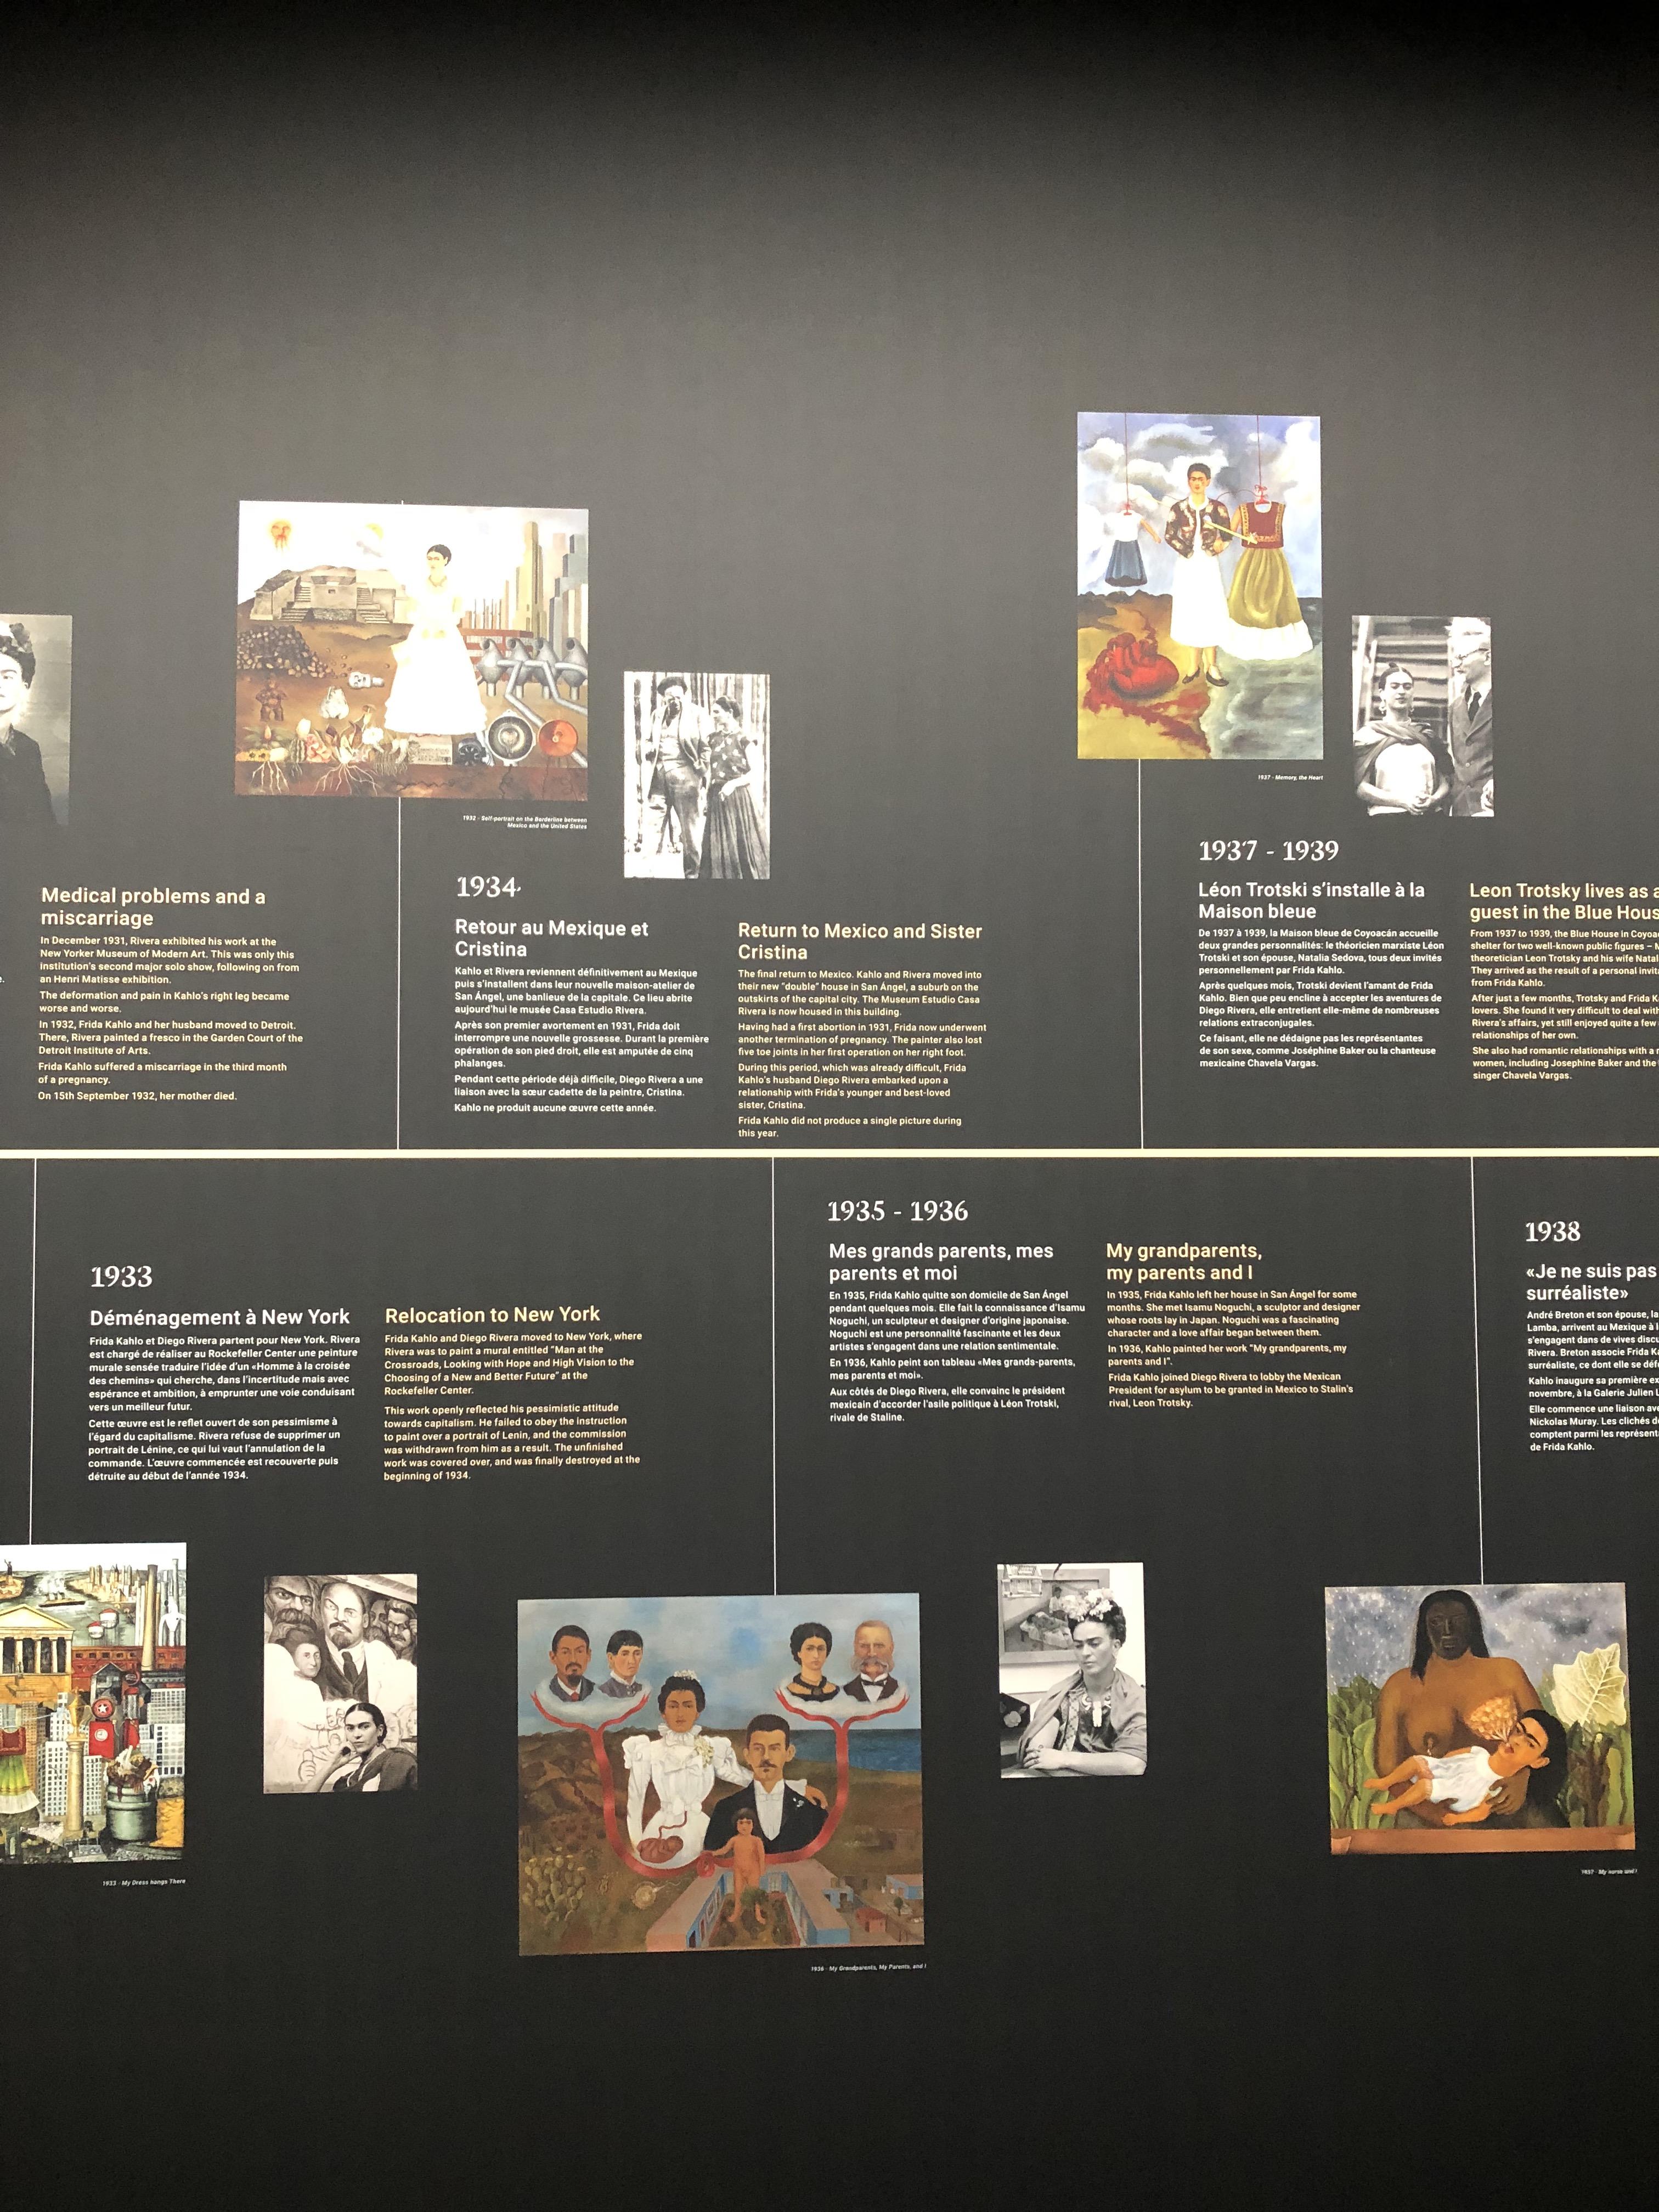 프리다 칼로 사진전&#44; 프리다 칼로&#44; Frida Kahlo&#44; 프리다 칼로 작품&#44; 예술 작품&#44; 프리다 칼로 전시회&#44; 해외 생활&#44; 미술 전시회&#44; 프리다 칼로 그림&#44; 프리다 칼로 작품&#44; 프리다 칼로 일대기